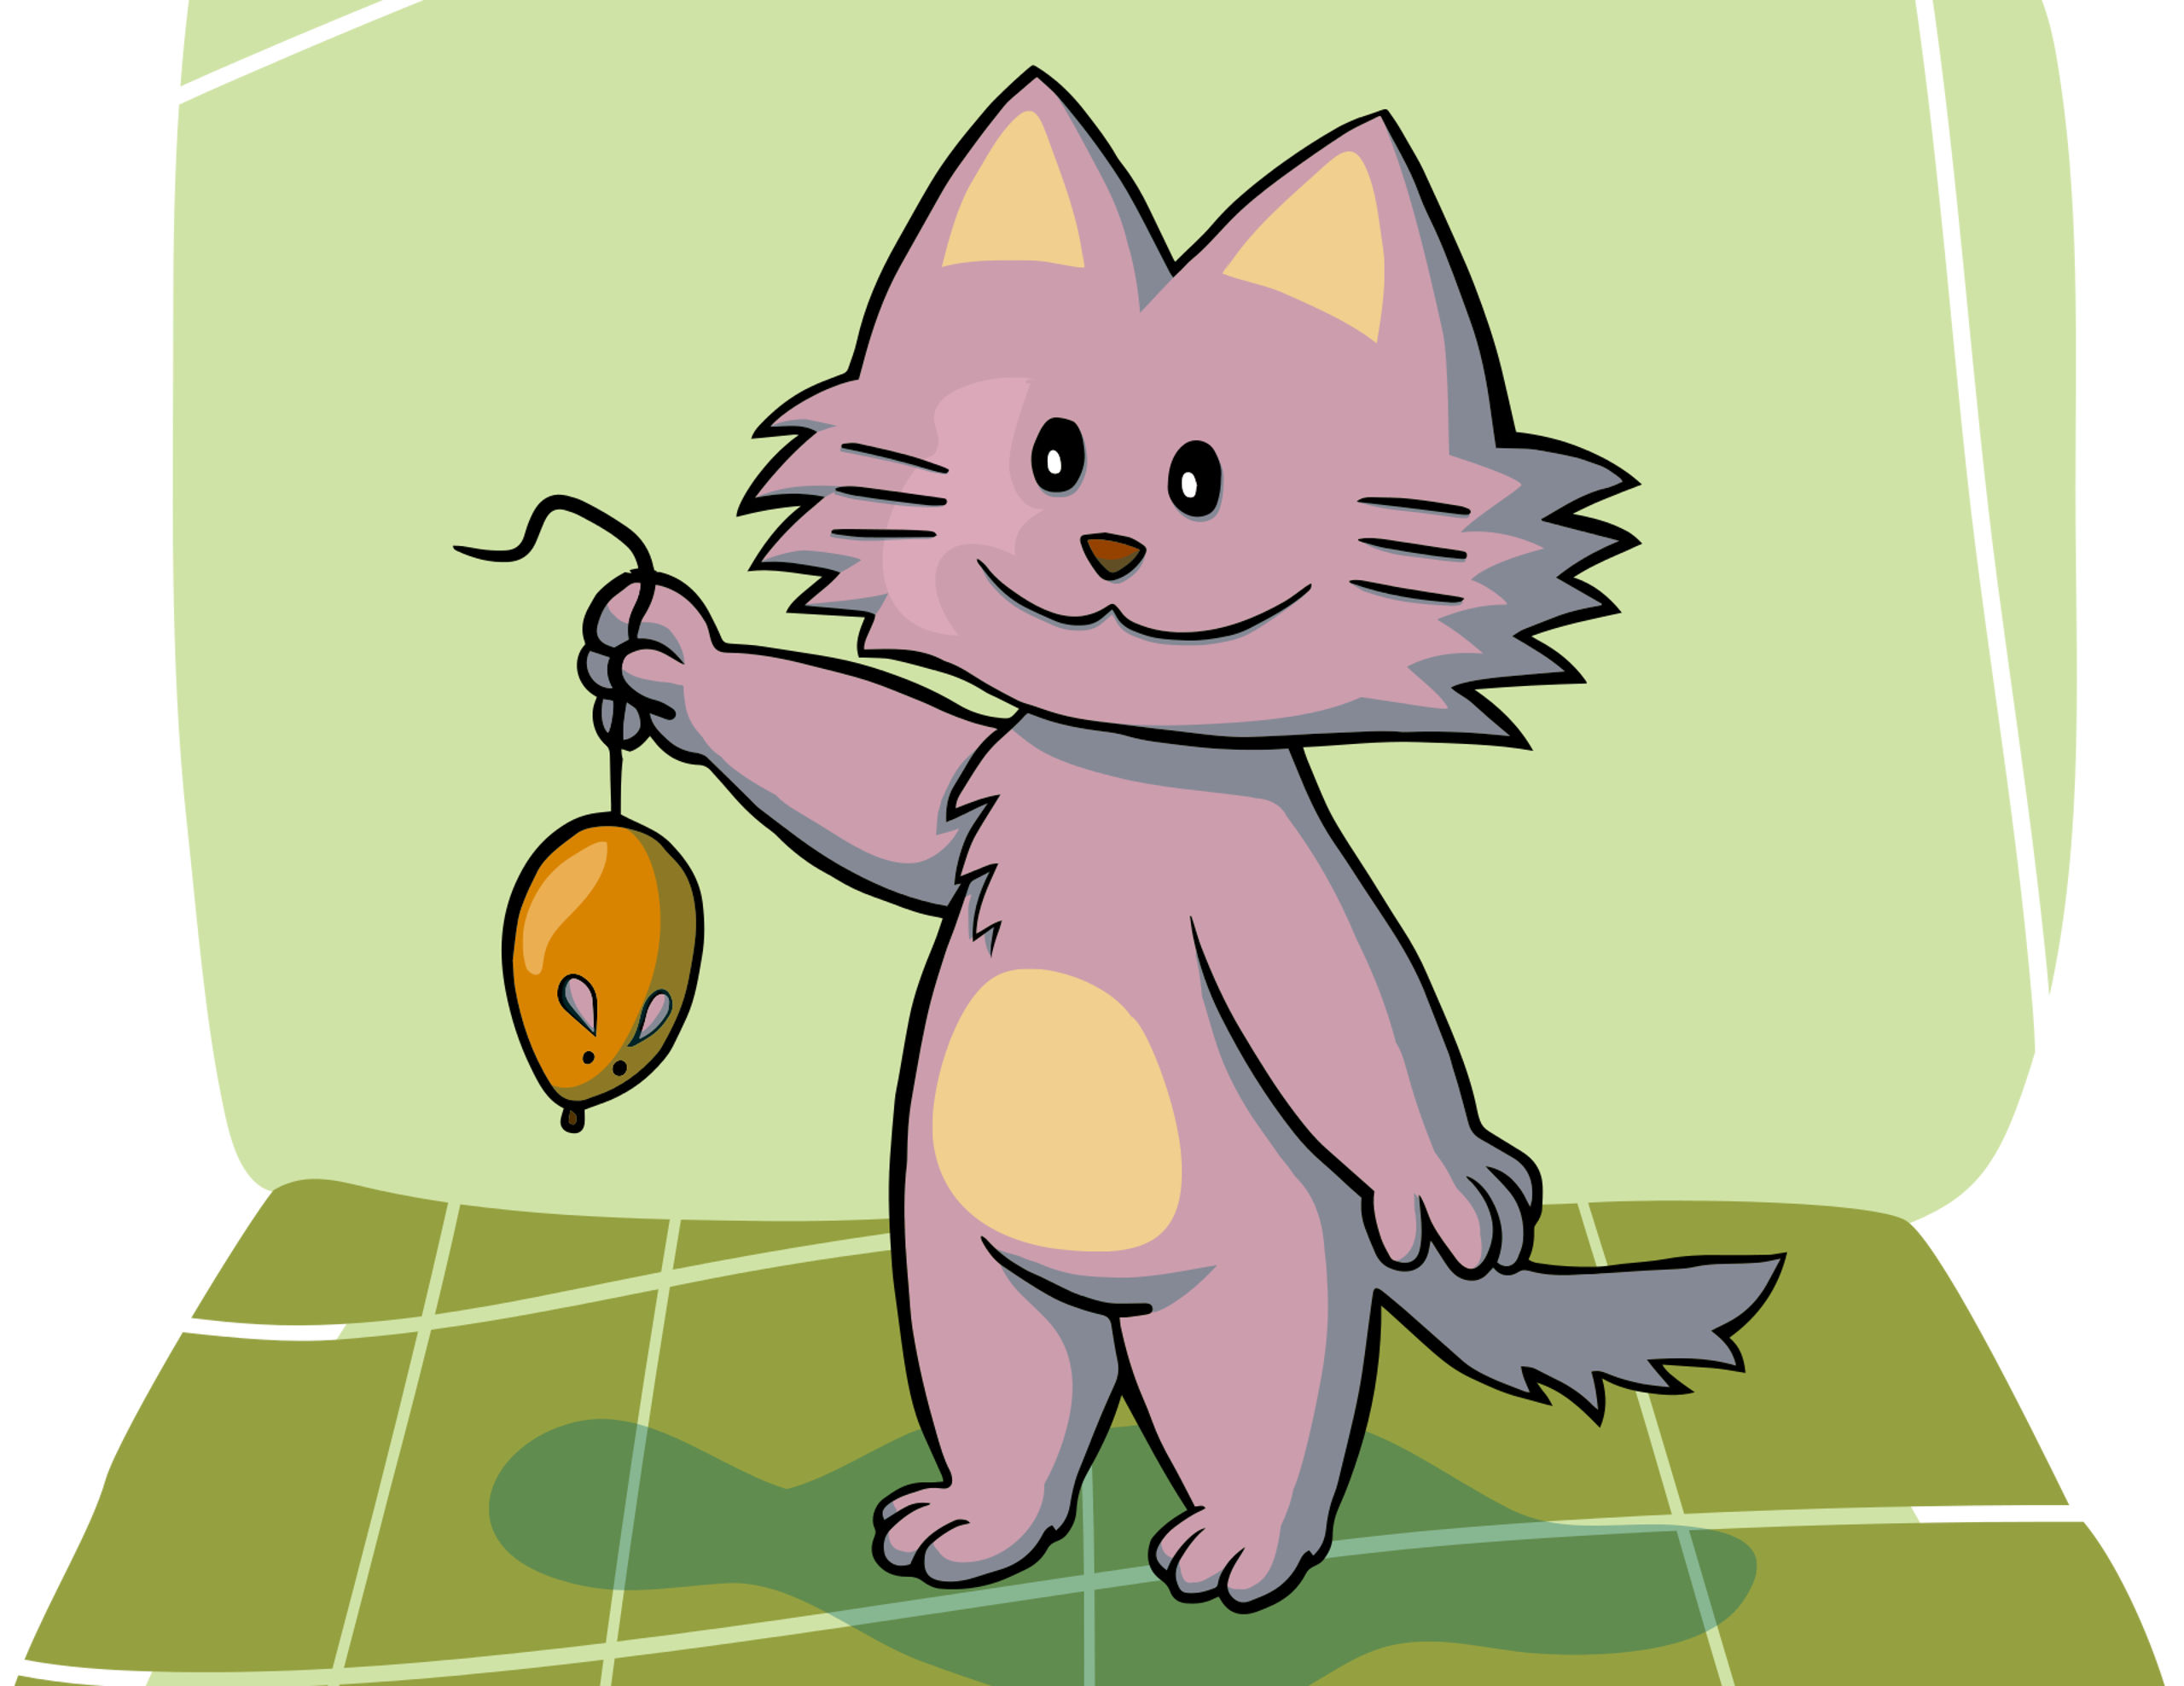 Η πονηρή γάτα έπιασε το ποντικάκι (εικόνα pixabay)